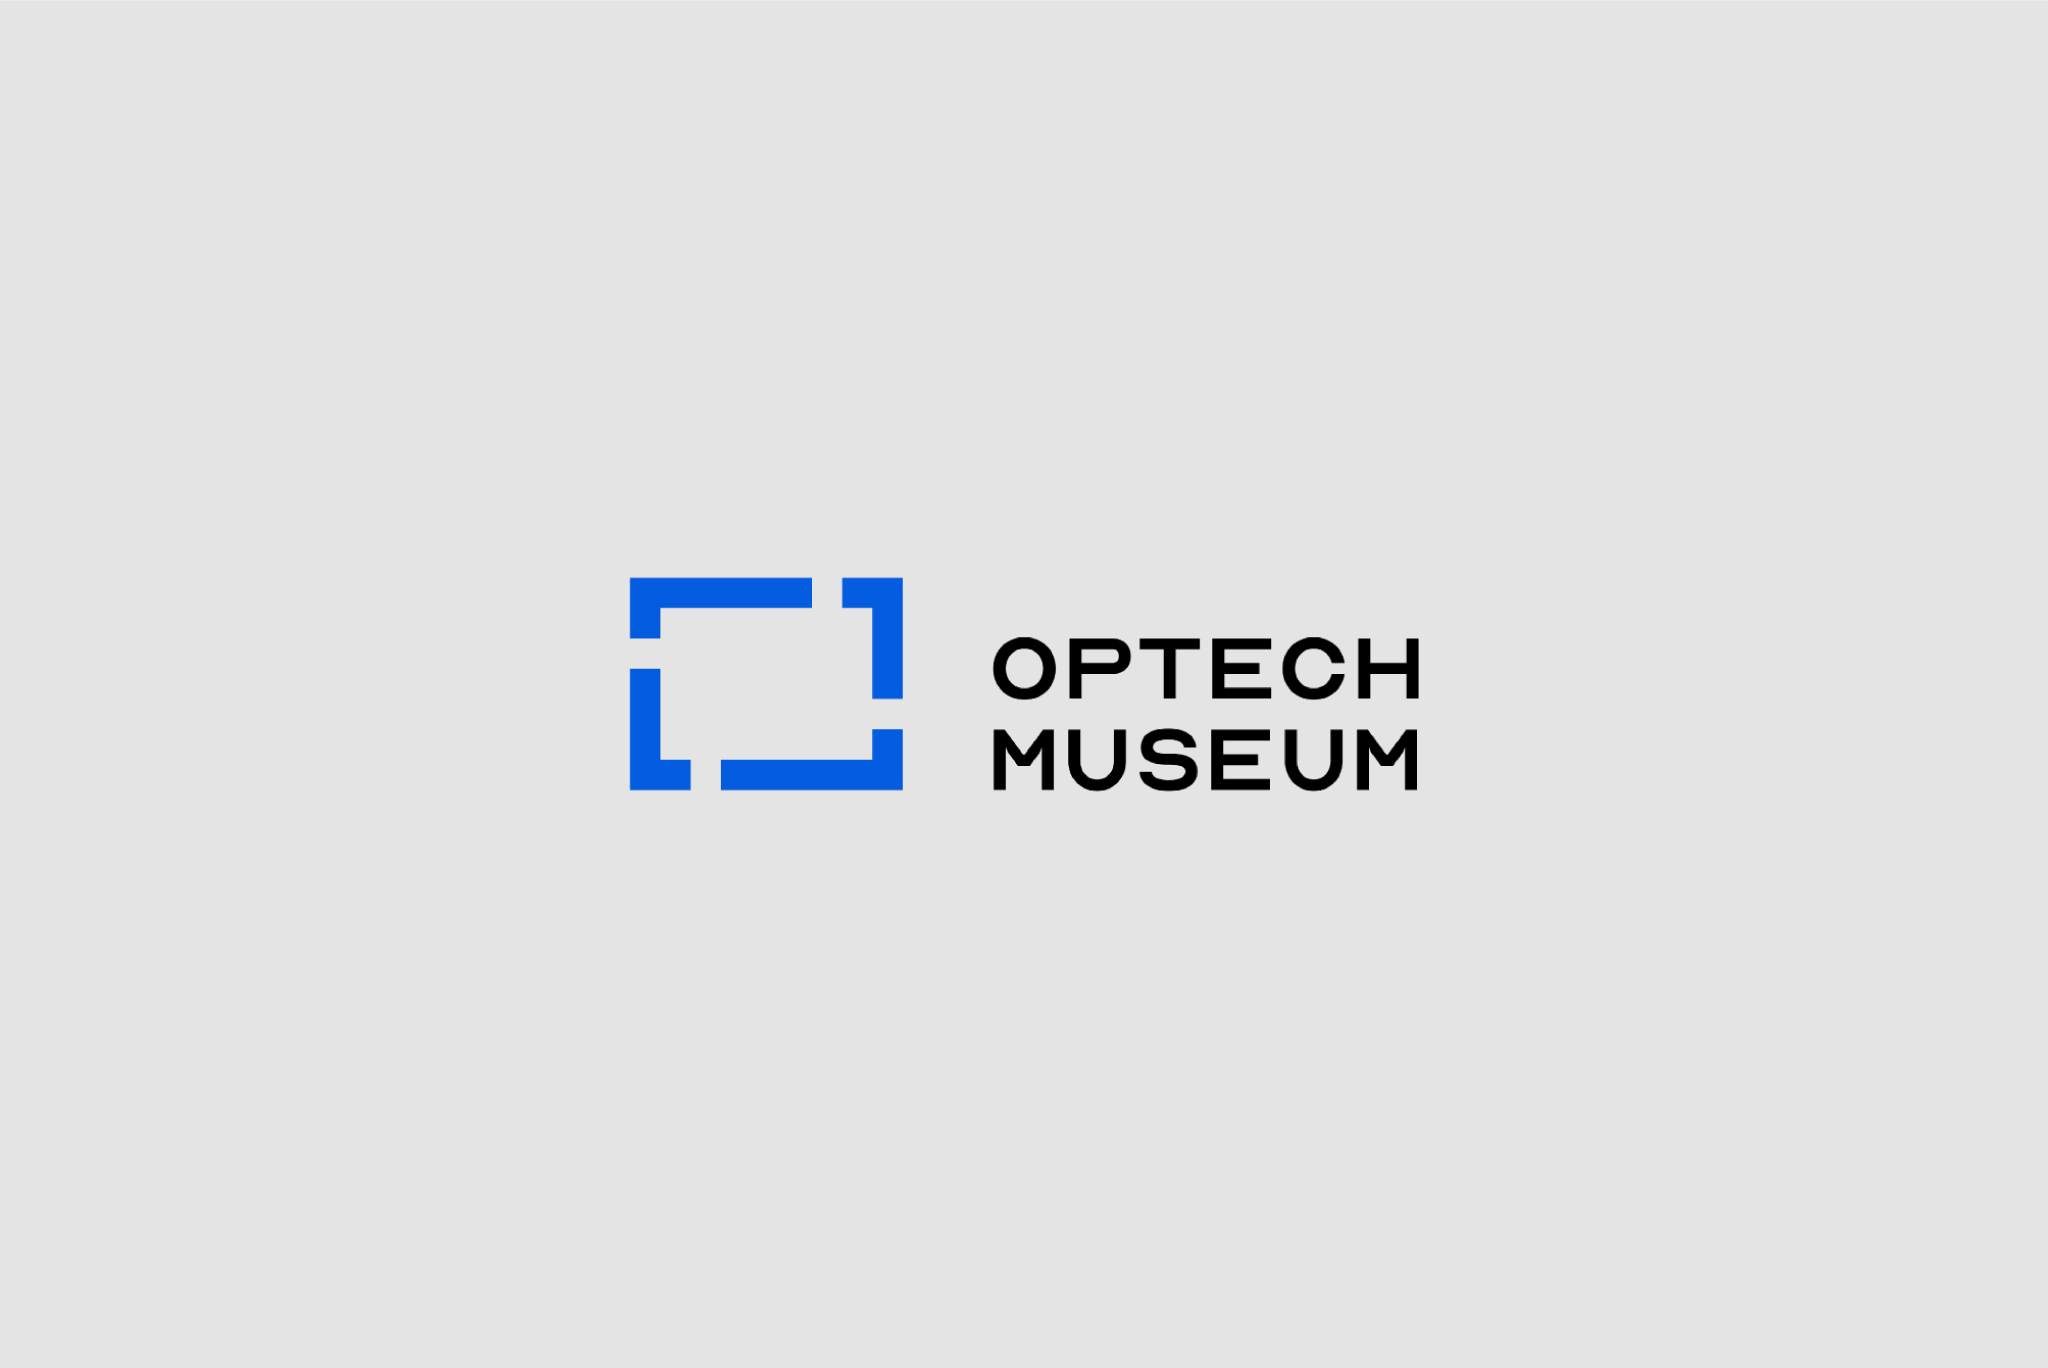 Optech Museum by Bocheng Meng SVA Design